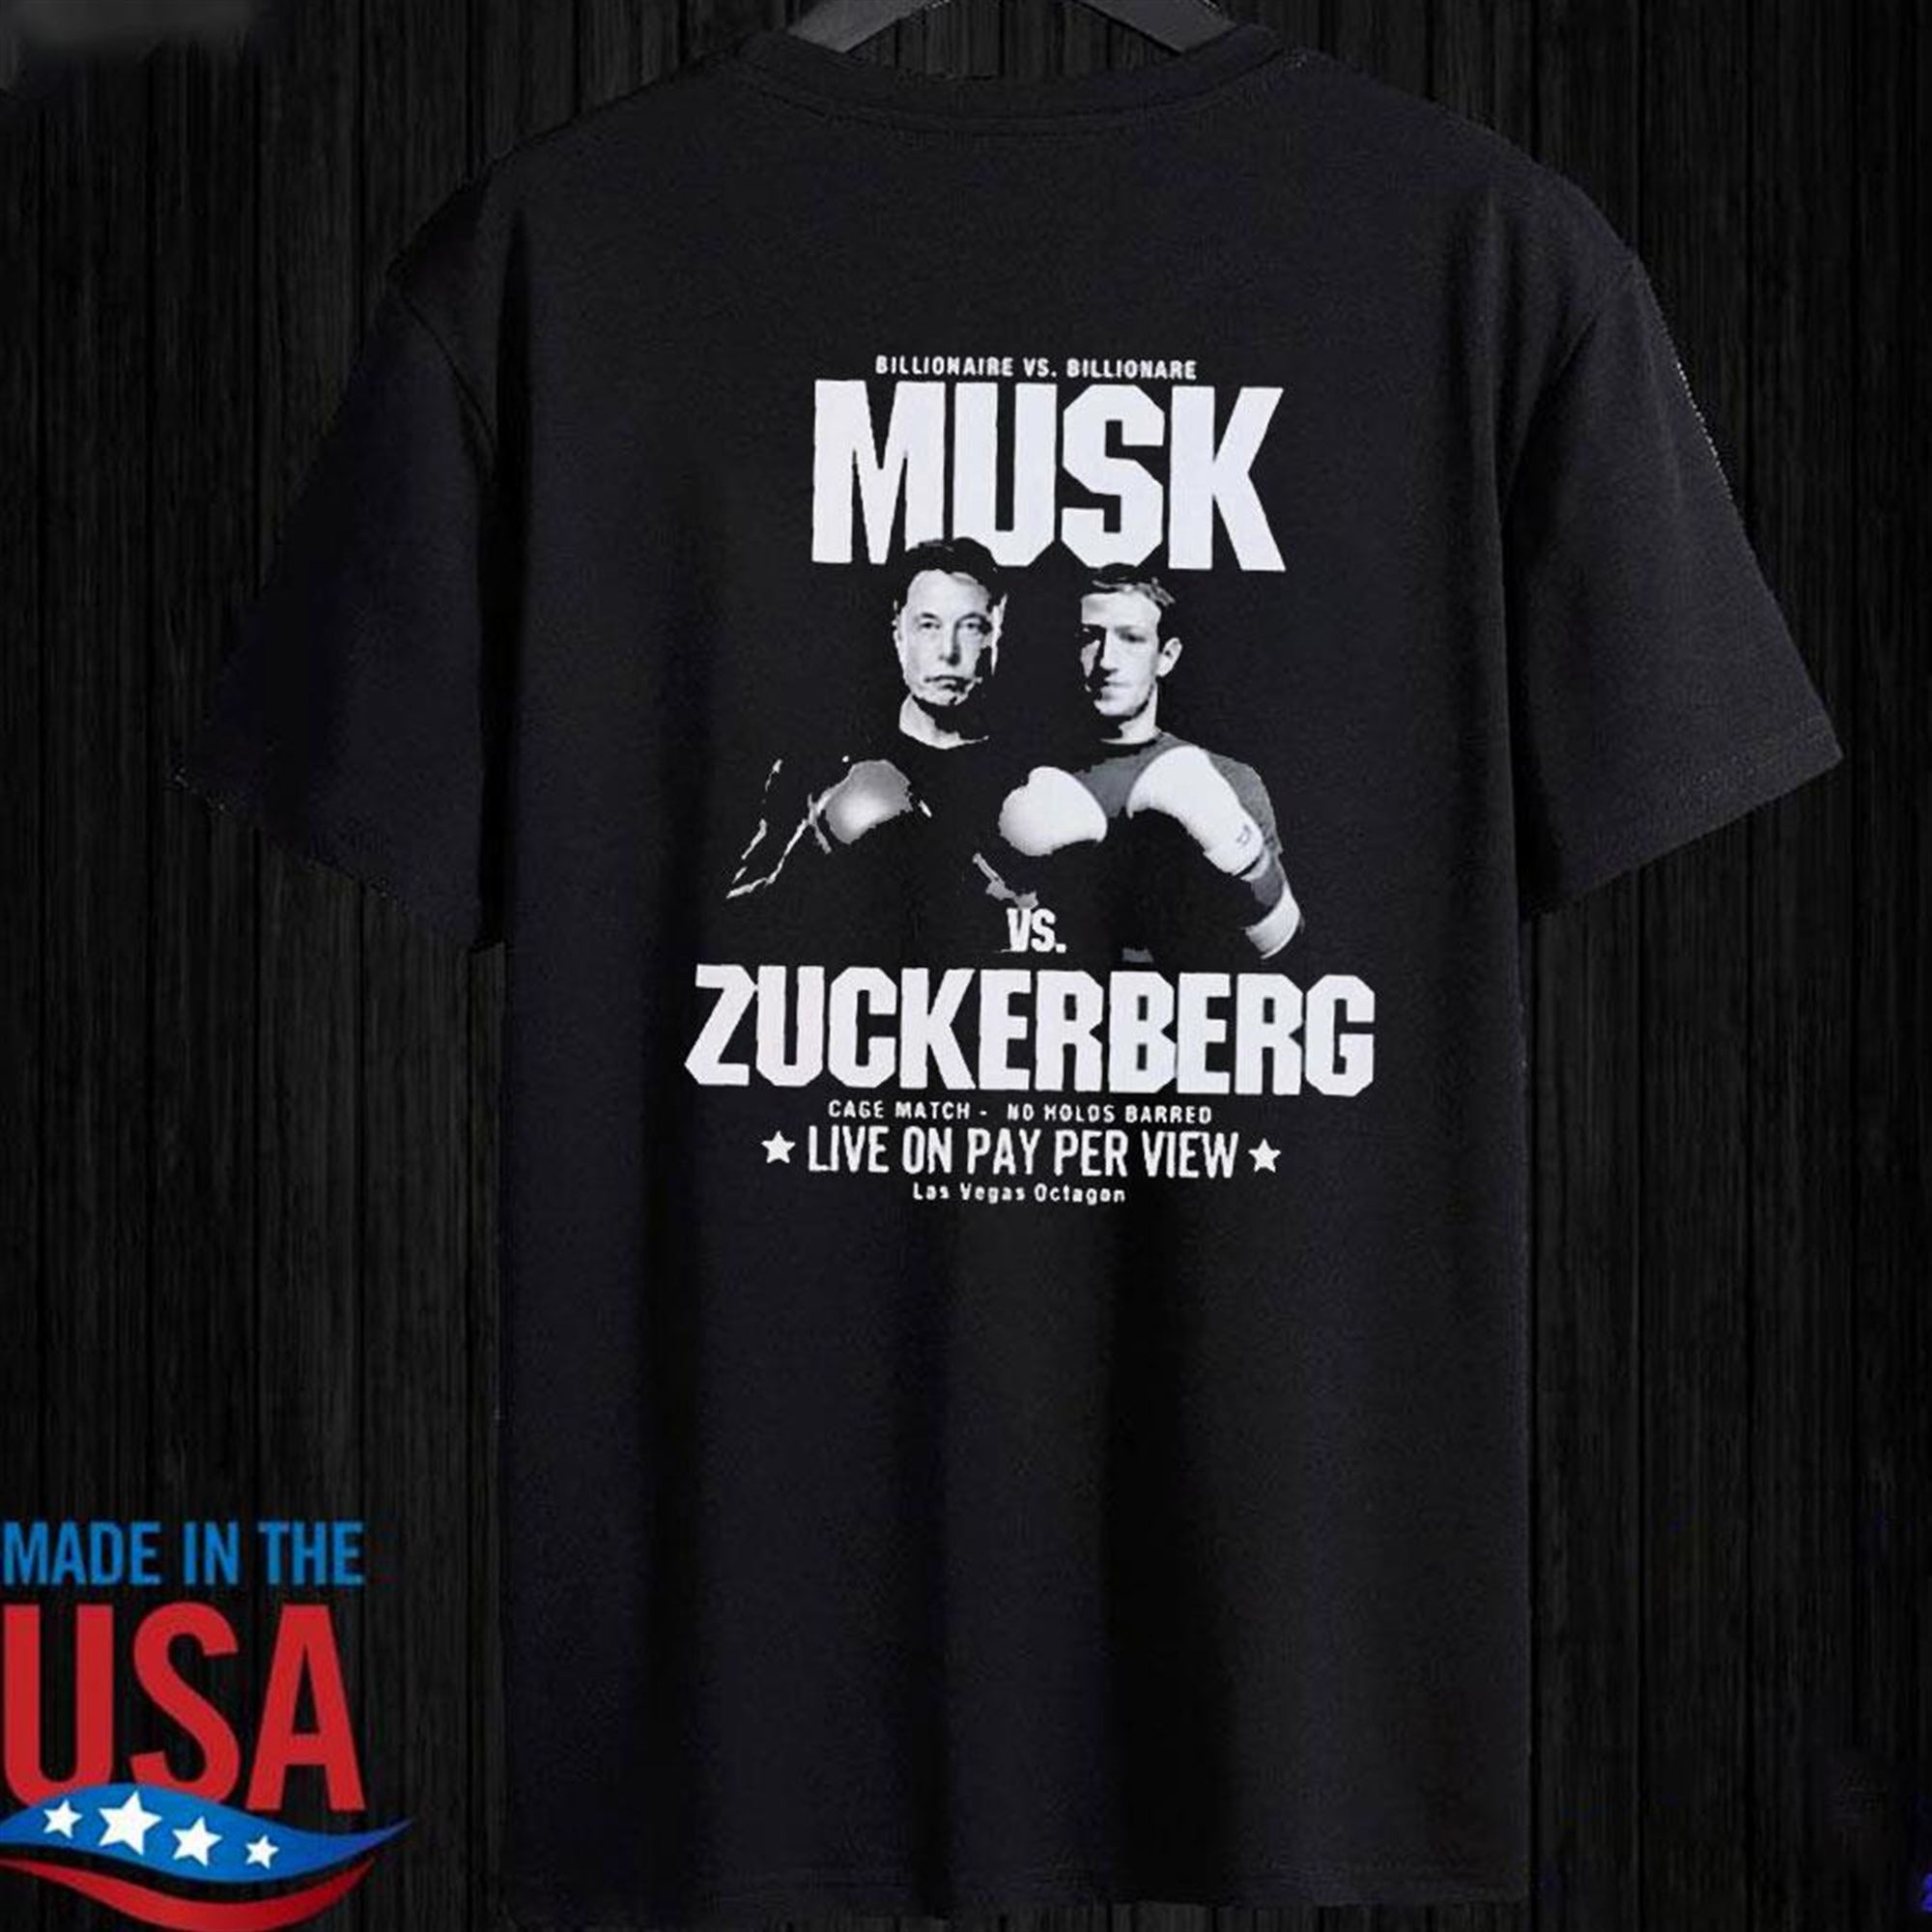 Zuckerberg Vs Musk Cage Match T-shirt Hoodie